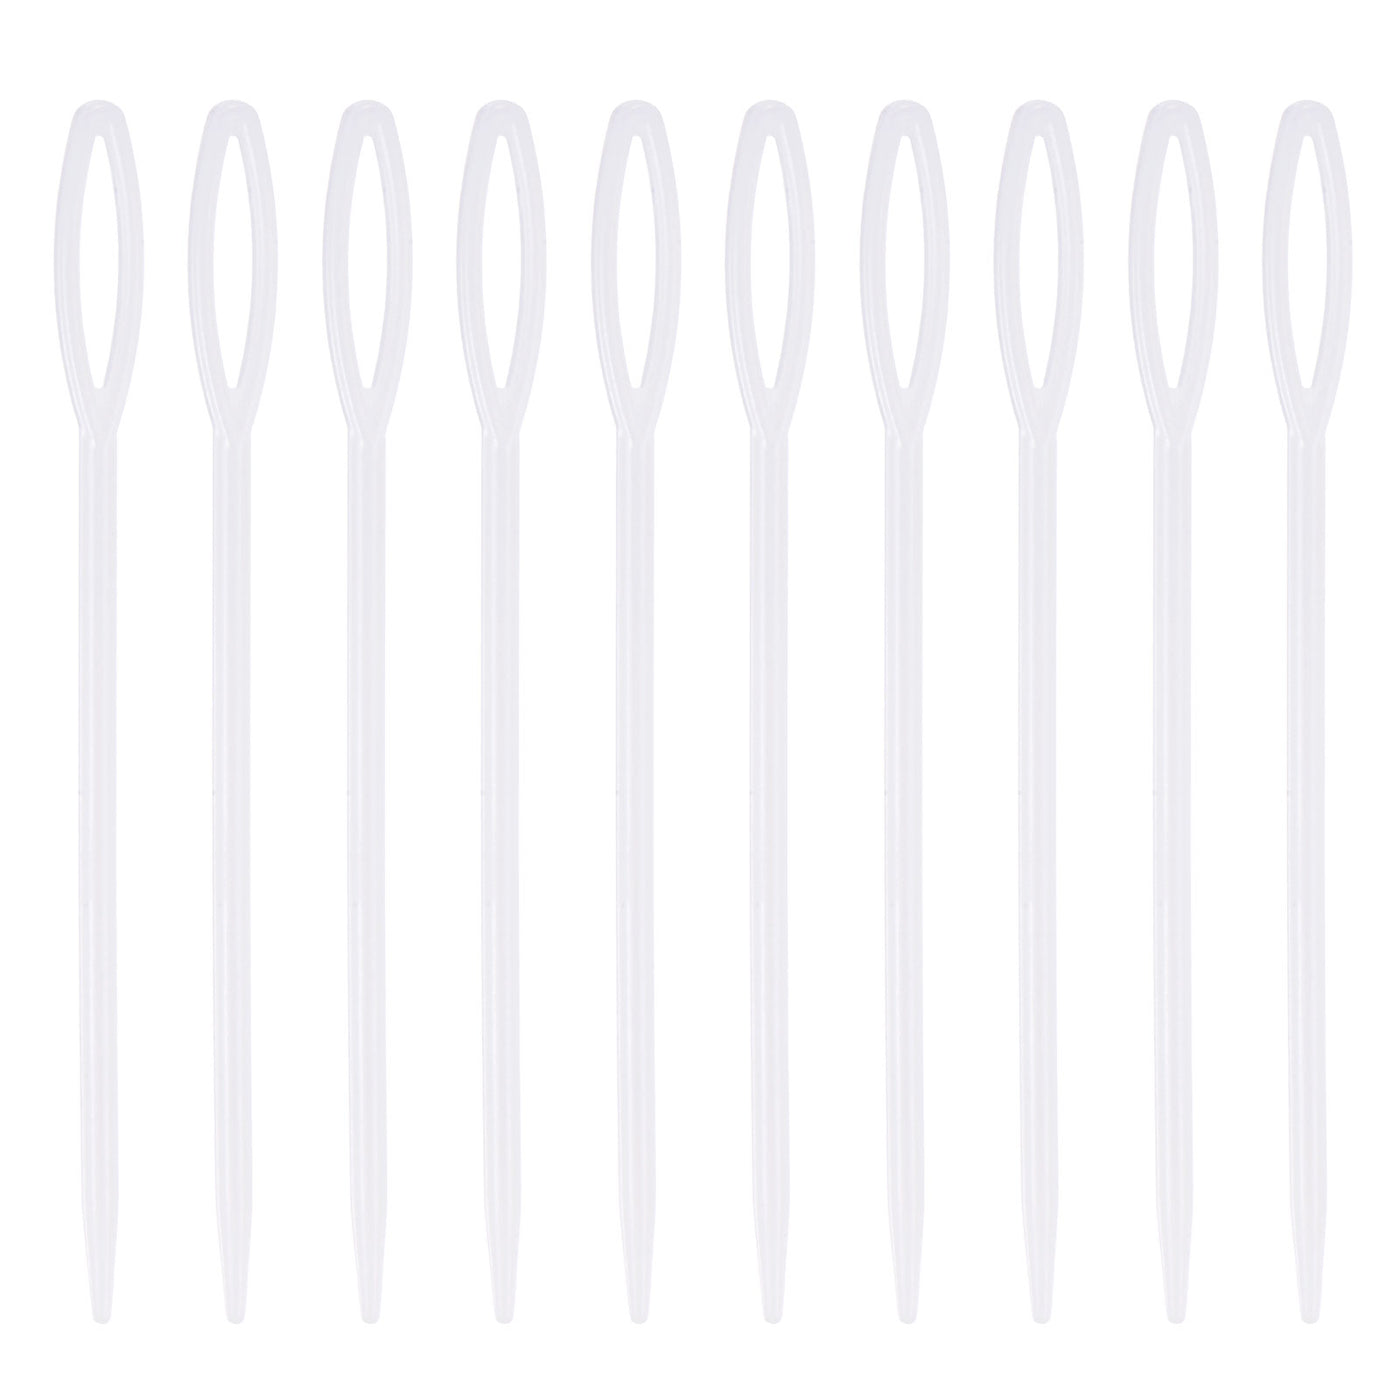 Harfington 100pcs Plastic Sewing Needles, 9cm Large Eye Blunt Learning Needles, White